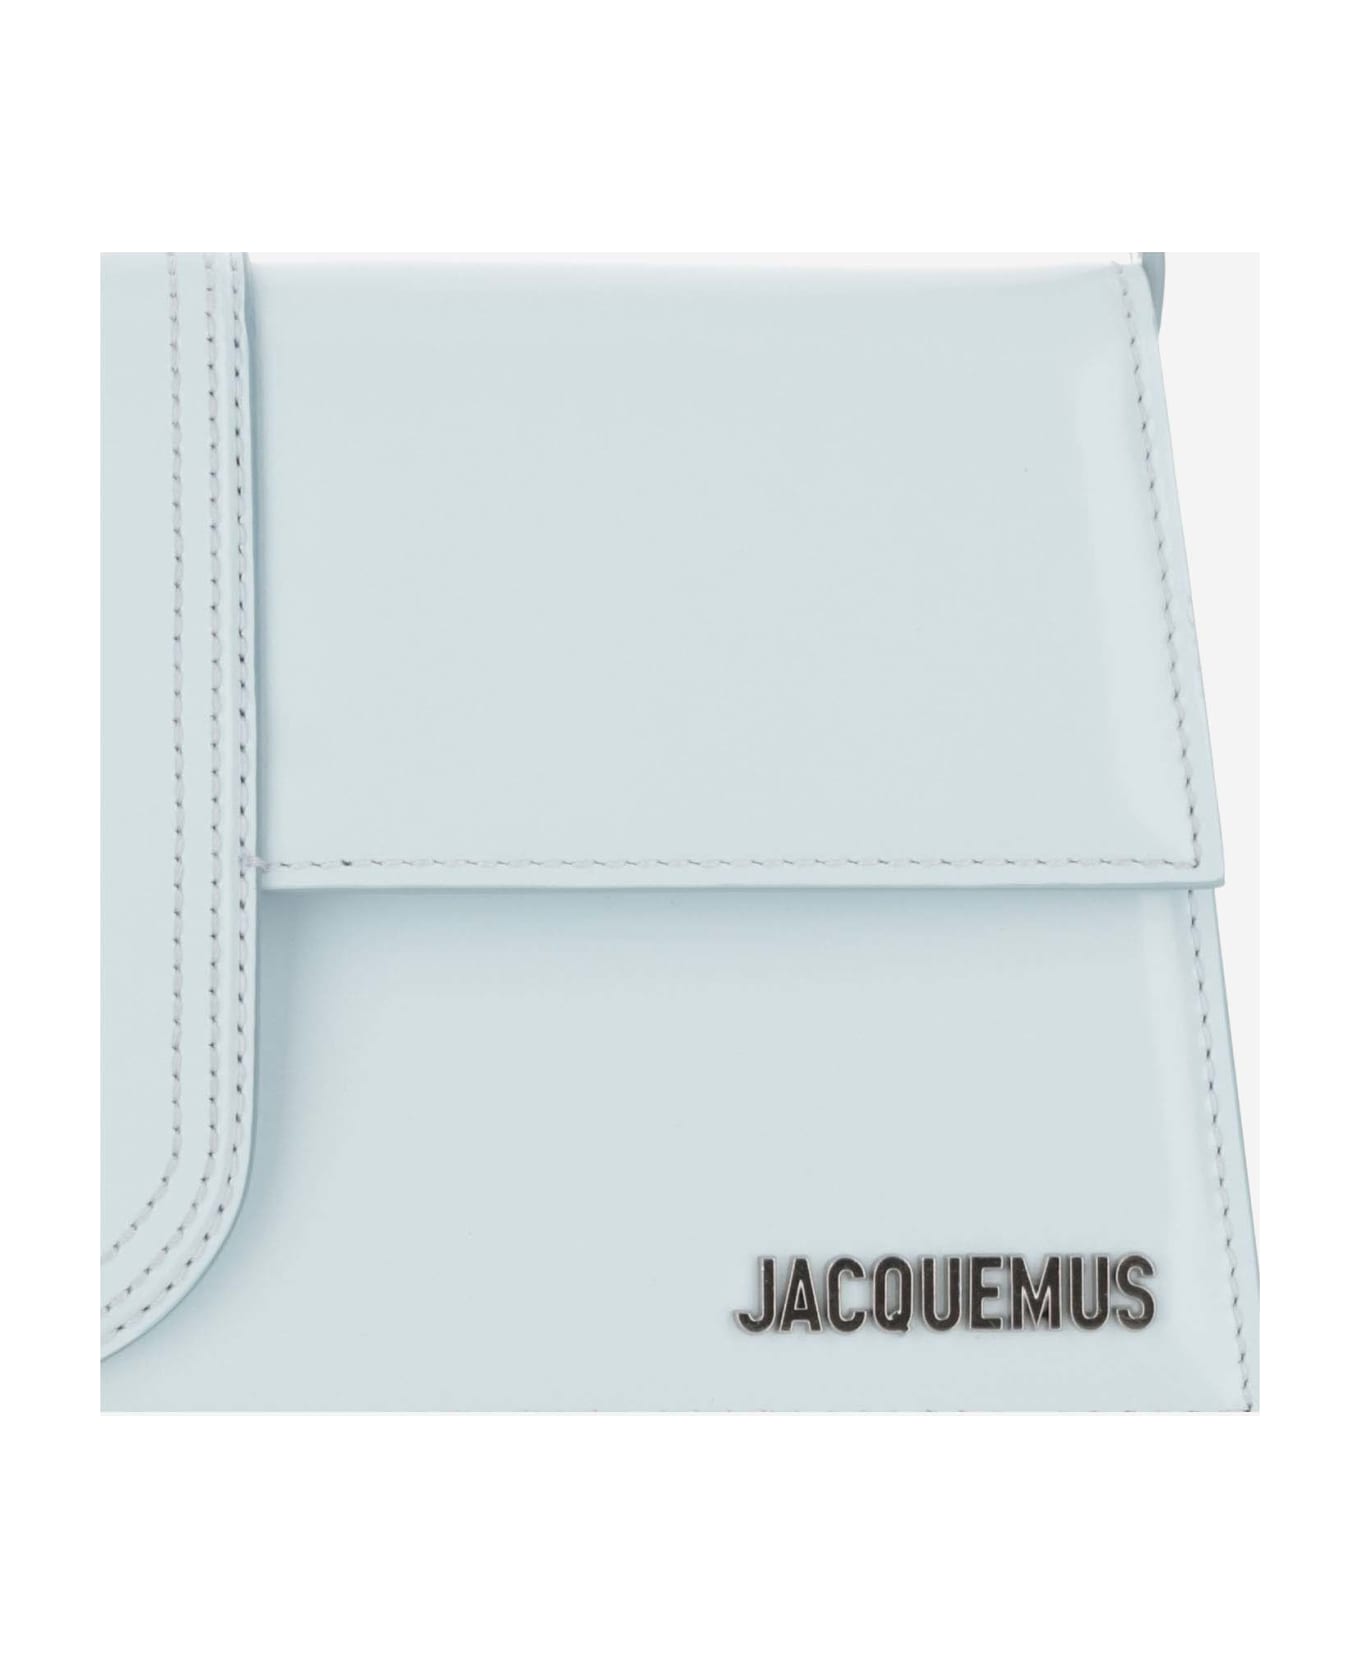 Jacquemus Le Bambino Bag - Blue